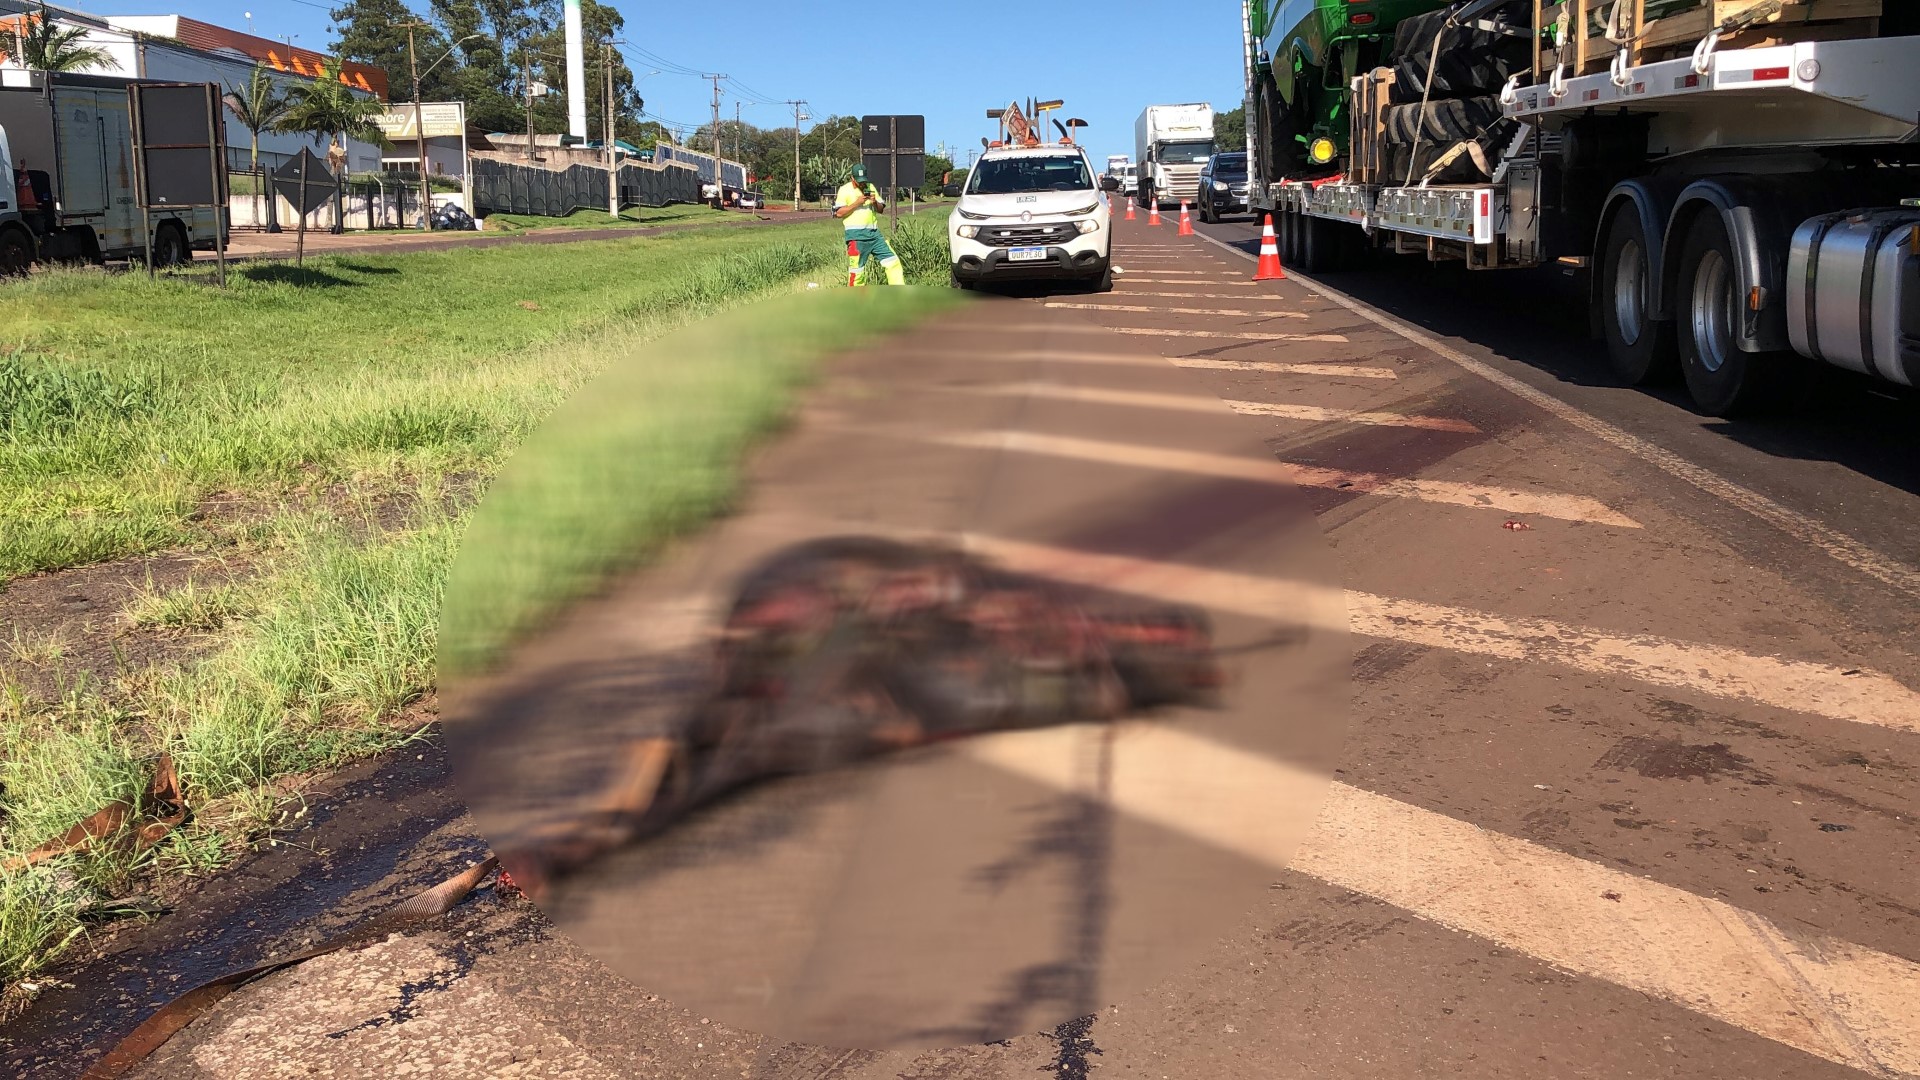 Motorista de aplicativo fica ferido após atropelar e matar cavalo na  BR-277, na Grande Curitiba